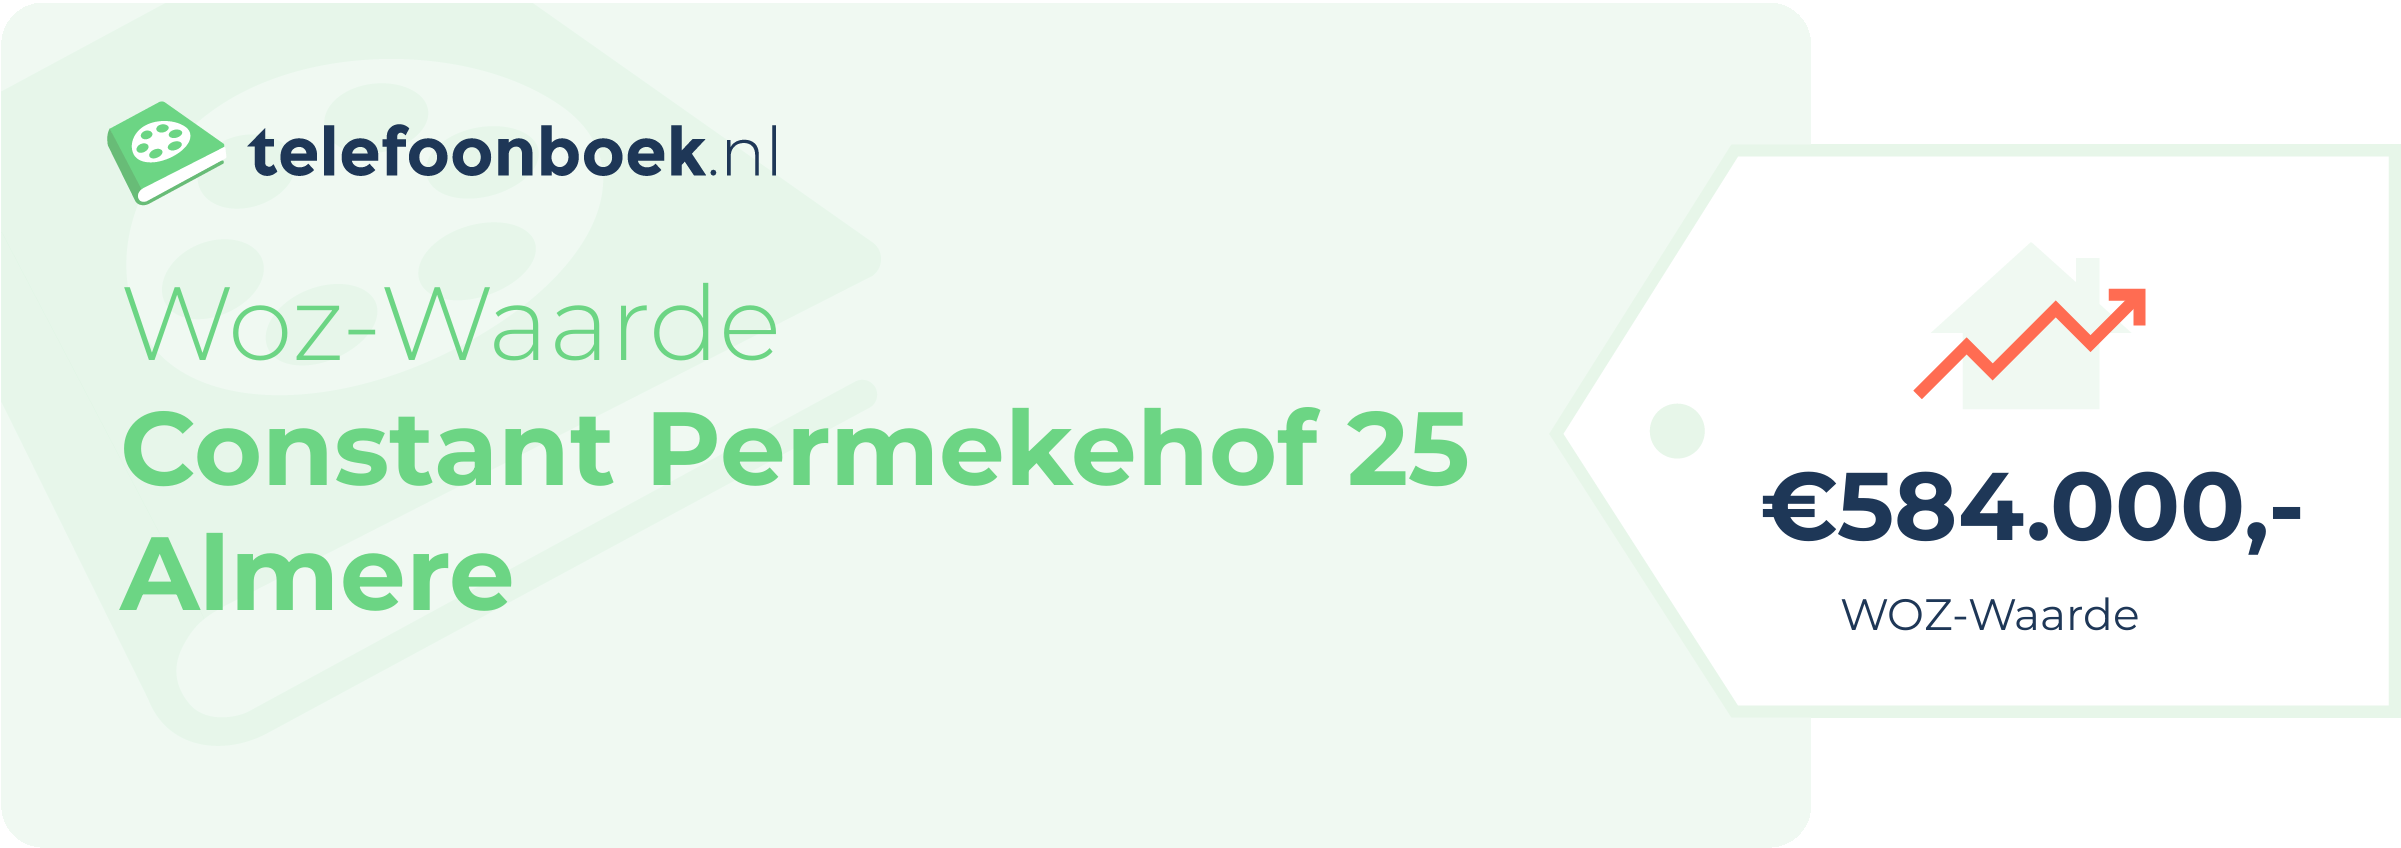 WOZ-waarde Constant Permekehof 25 Almere